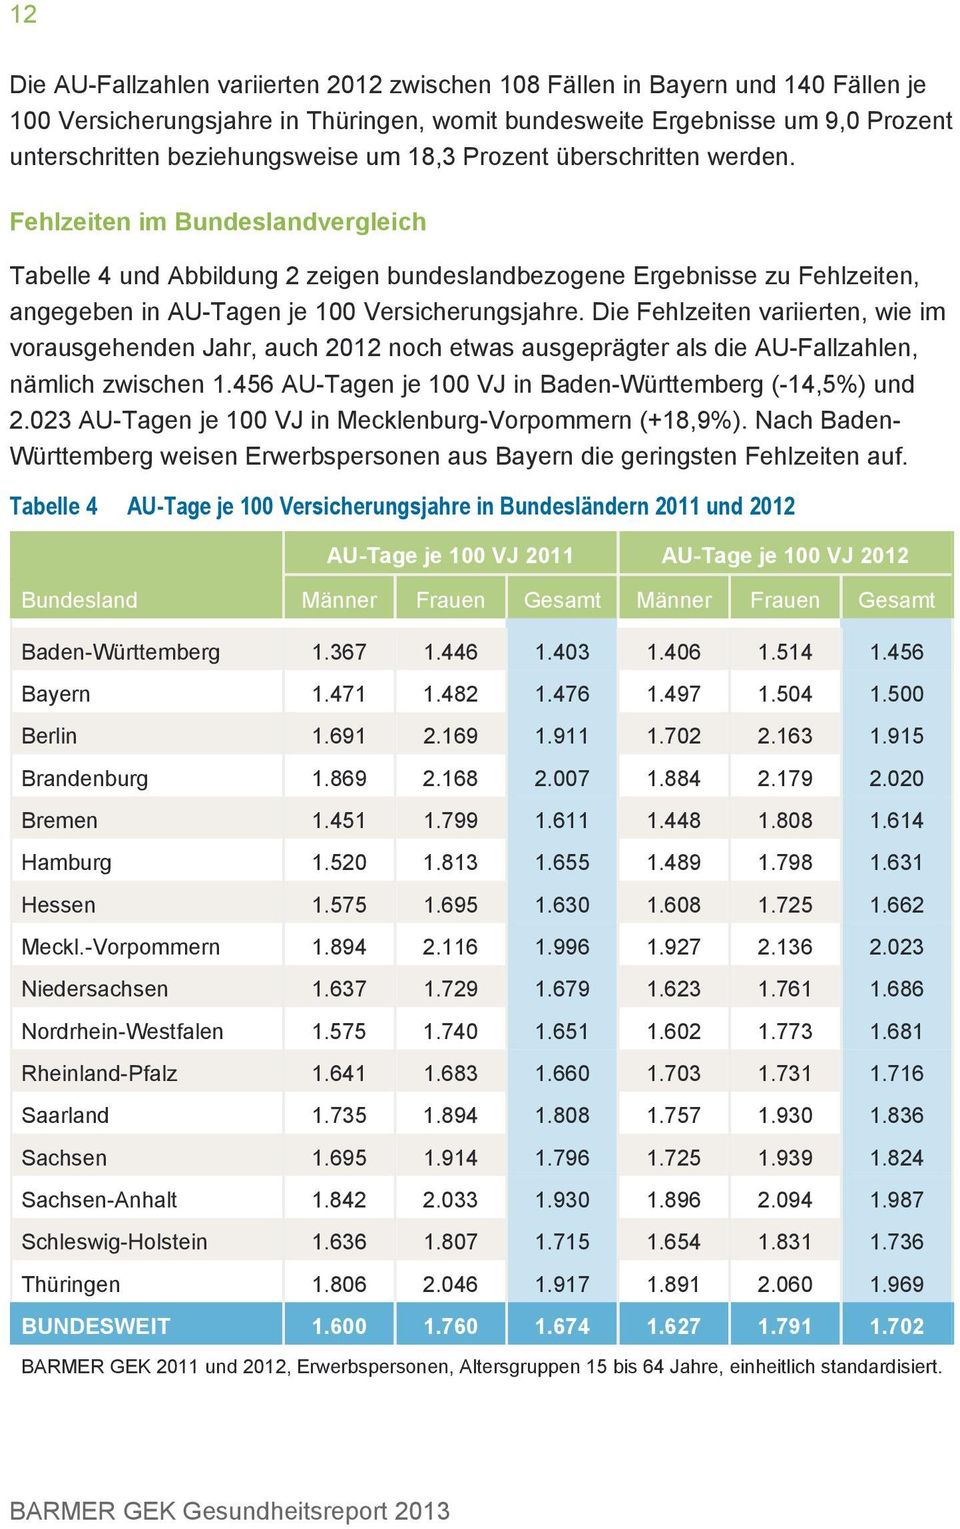 Die Fehlzeiten variierten, wie im vorausgehenden Jahr, auch 2012 noch etwas ausgeprägter als die AU-Fallzahlen, nämlich zwischen 1.456 AU-Tagen je 100 VJ in Baden-Württemberg (-14,5%) und 2.